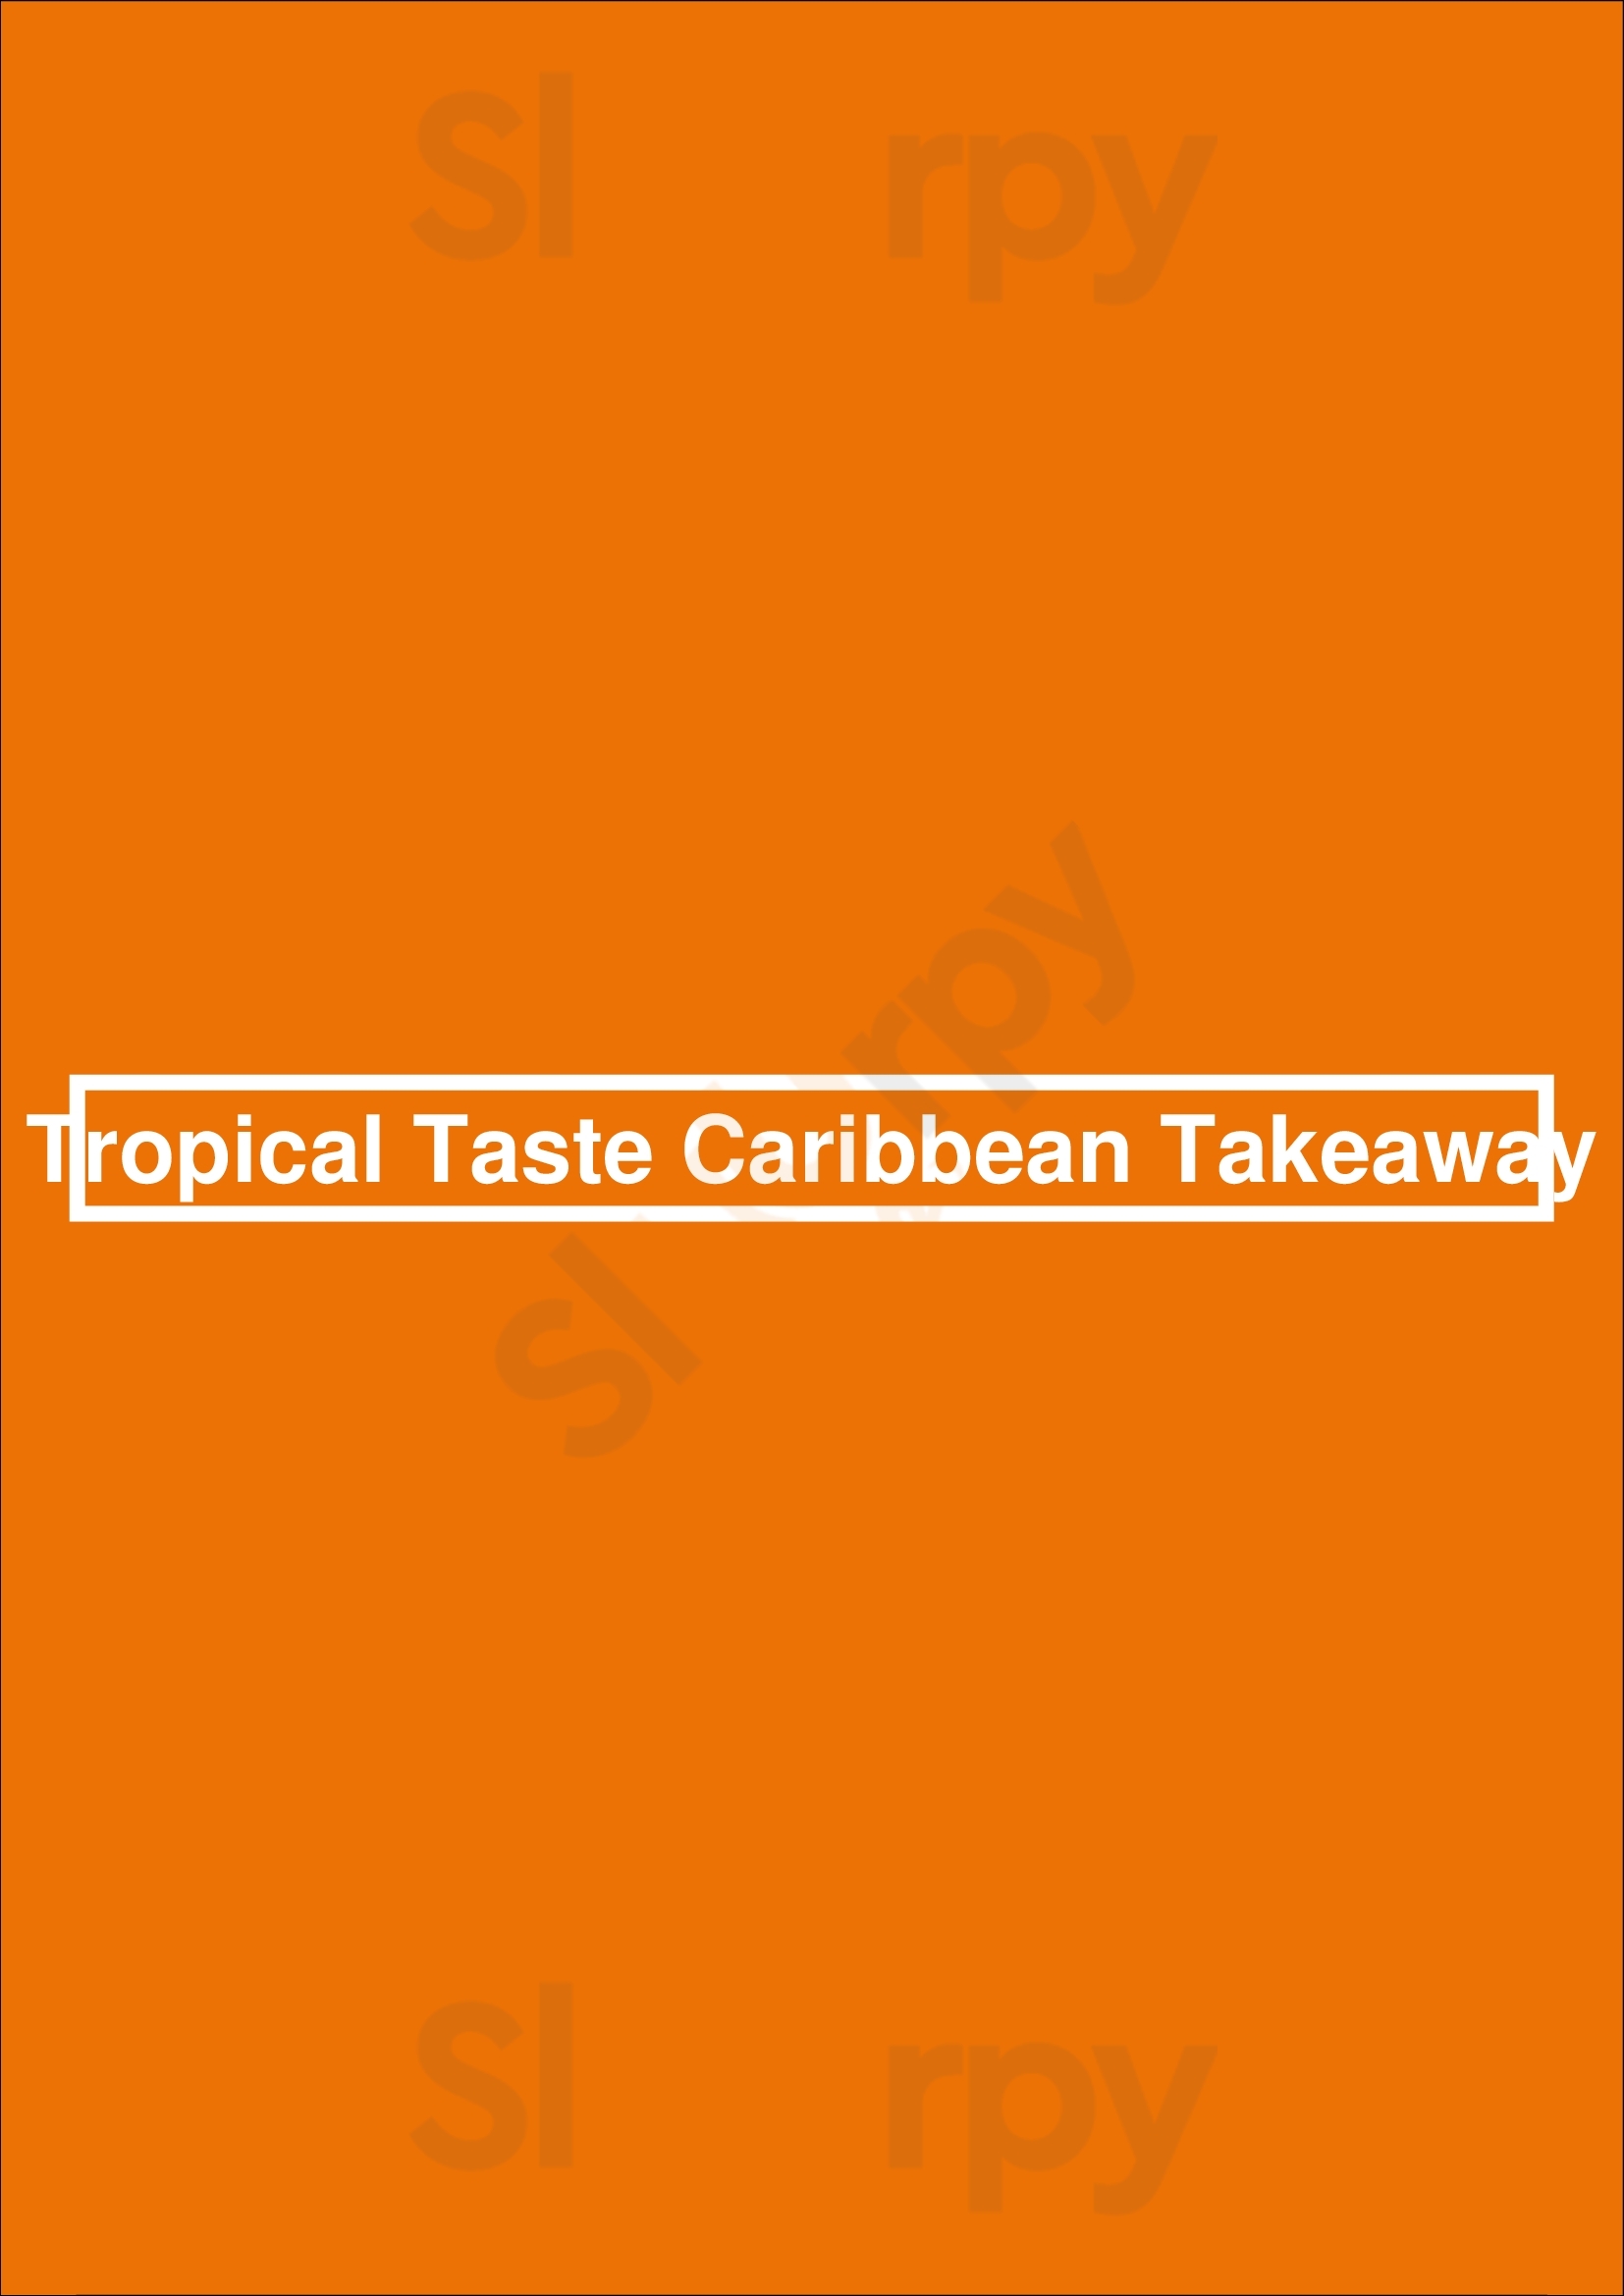 Tropical Taste Caribbean Takeaway Nottingham Menu - 1